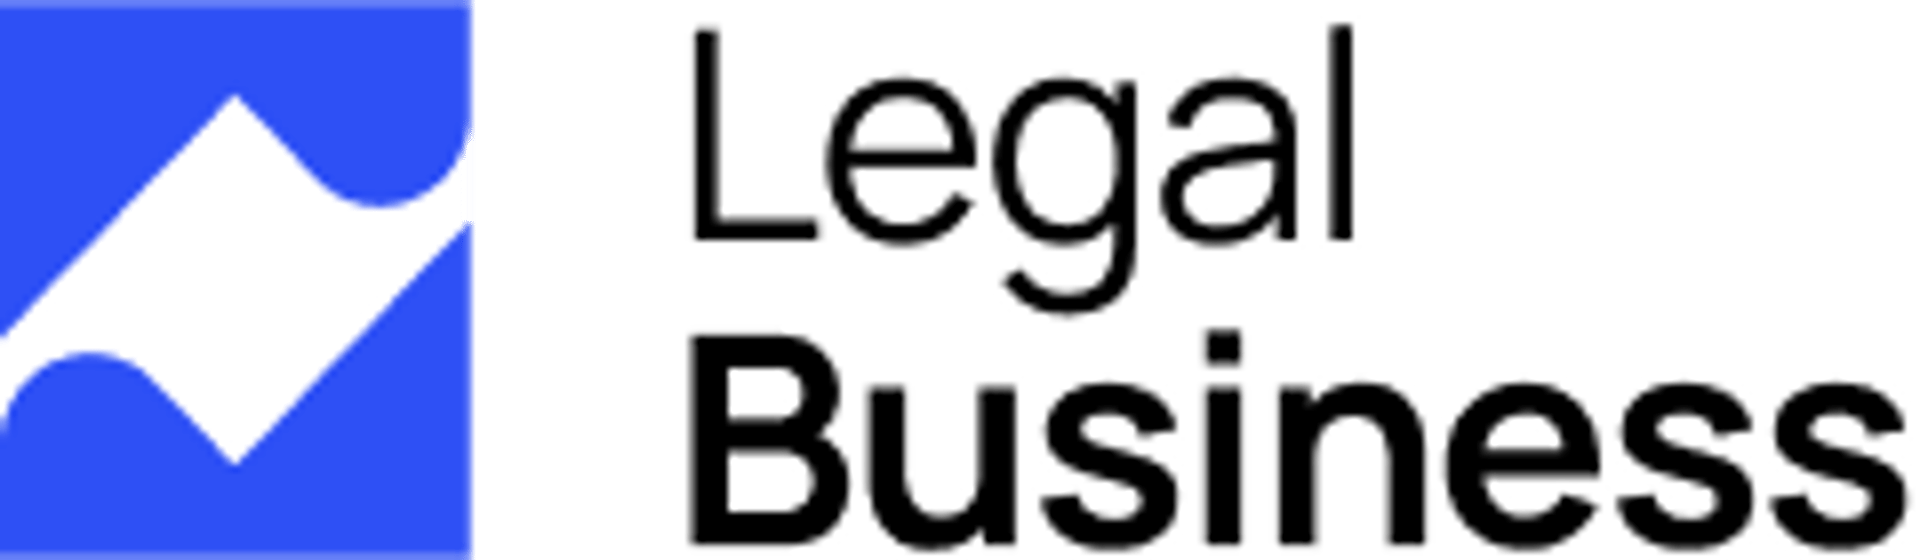 Legal Business - Attorney & Lawyer WordPress Theme Logo | Cmsmasters studio